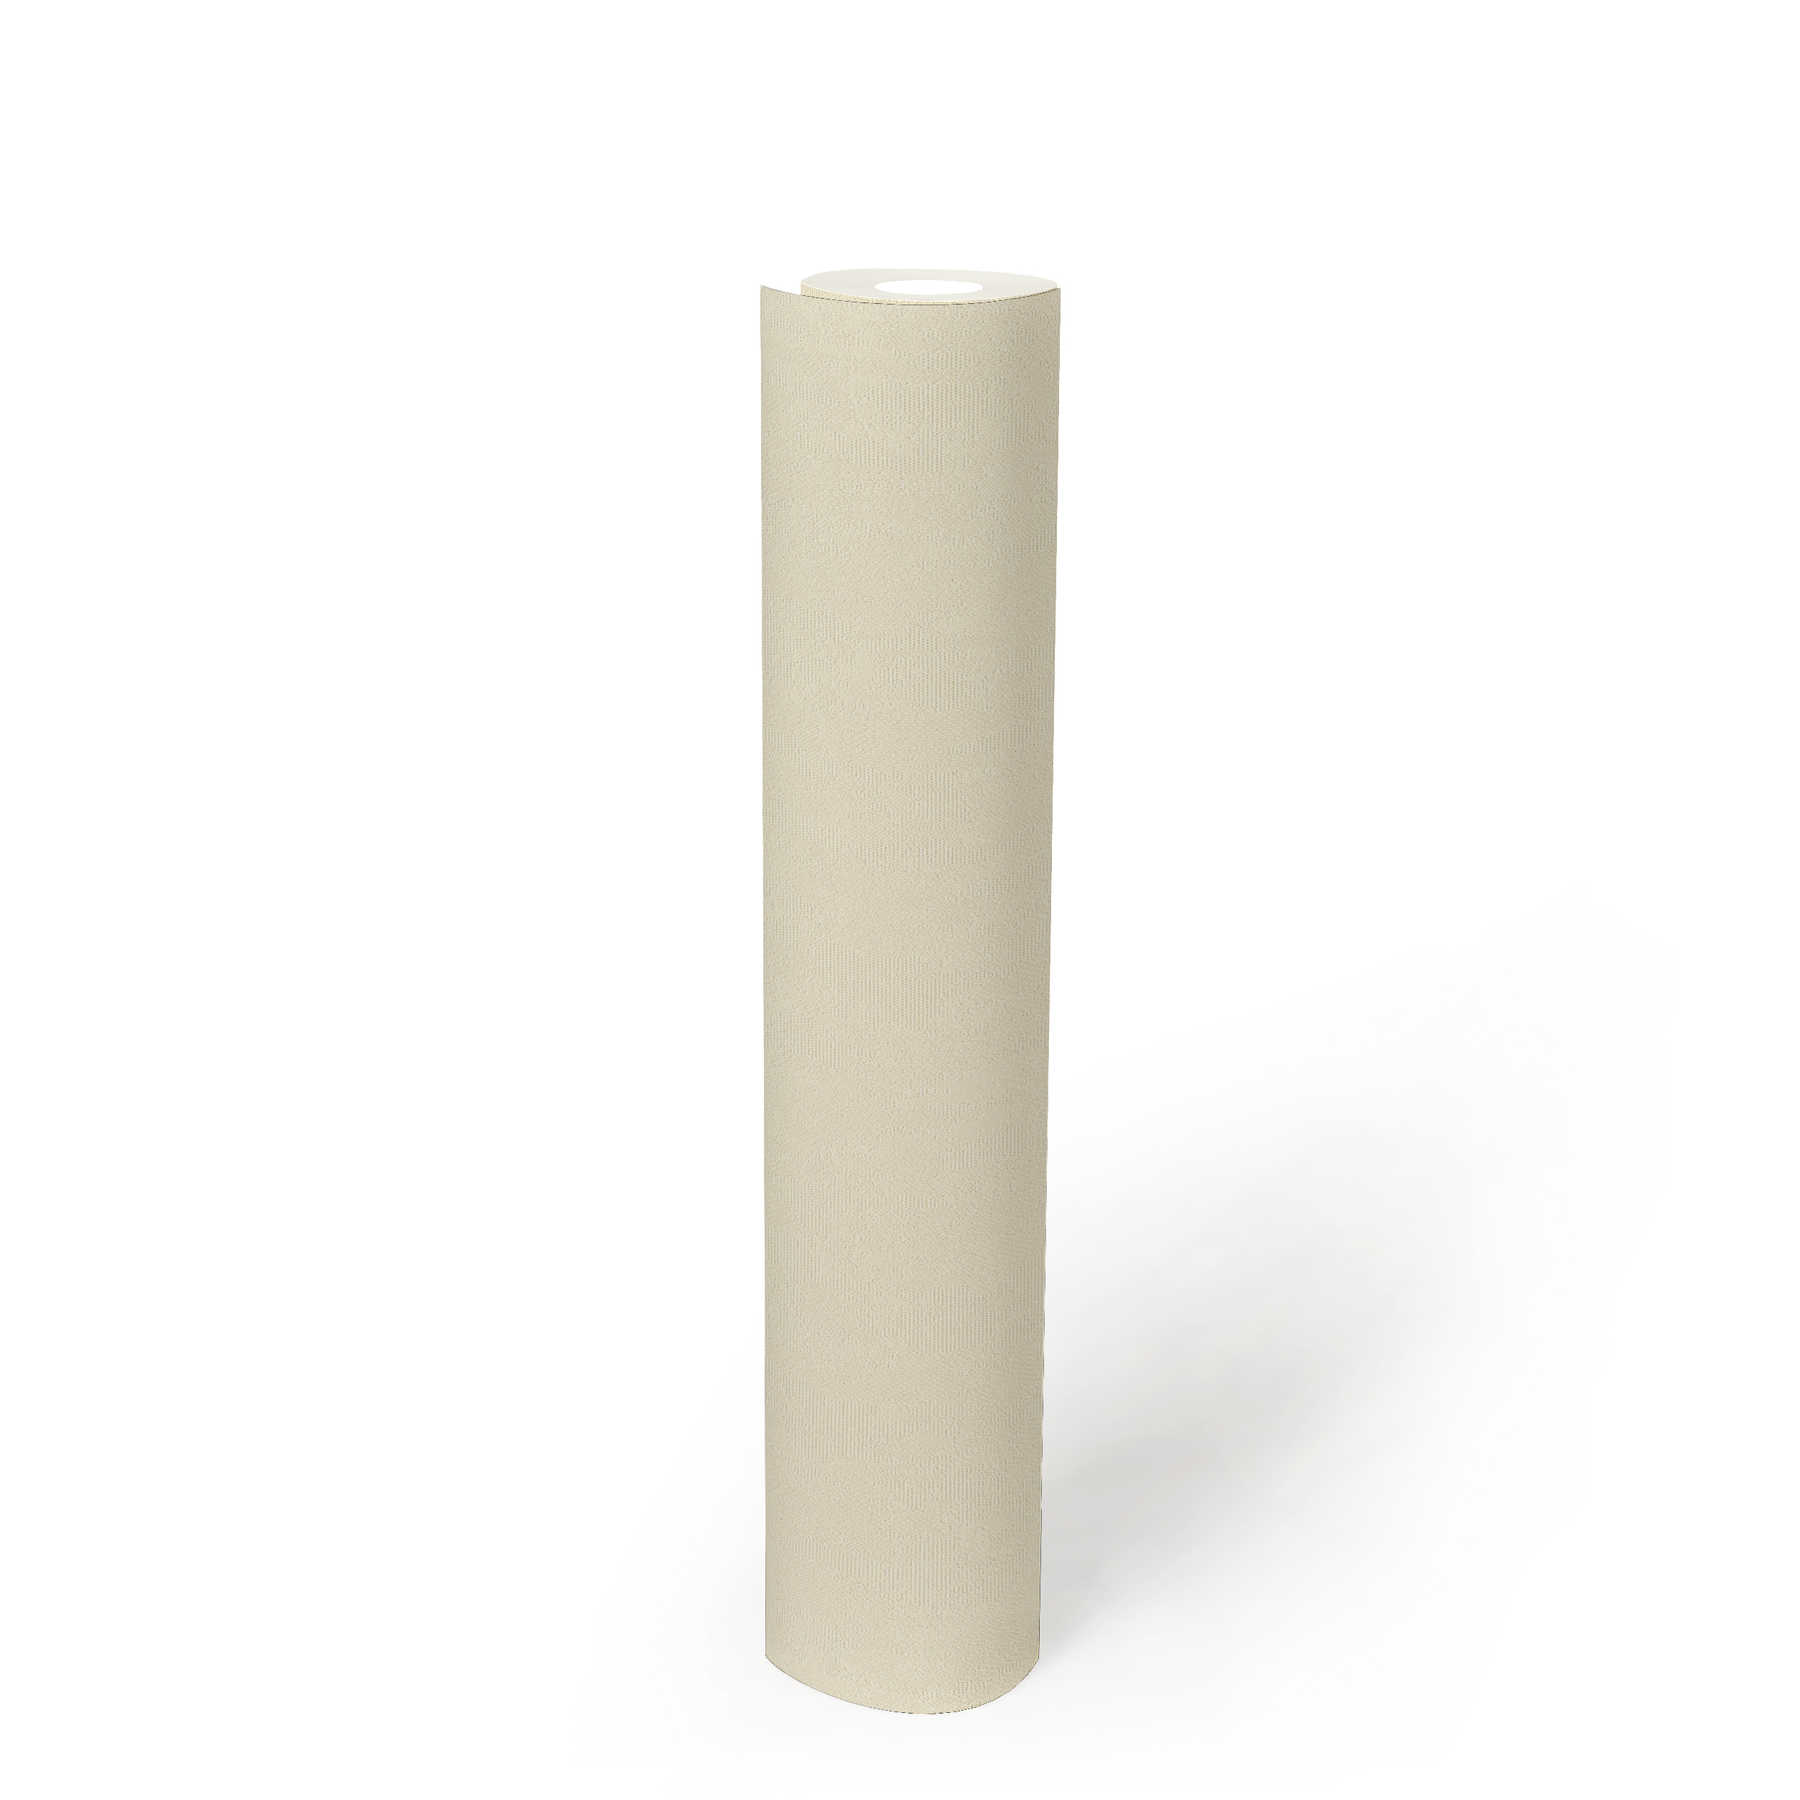             Papier peint intissé crème-blanc uni avec surface structurée
        